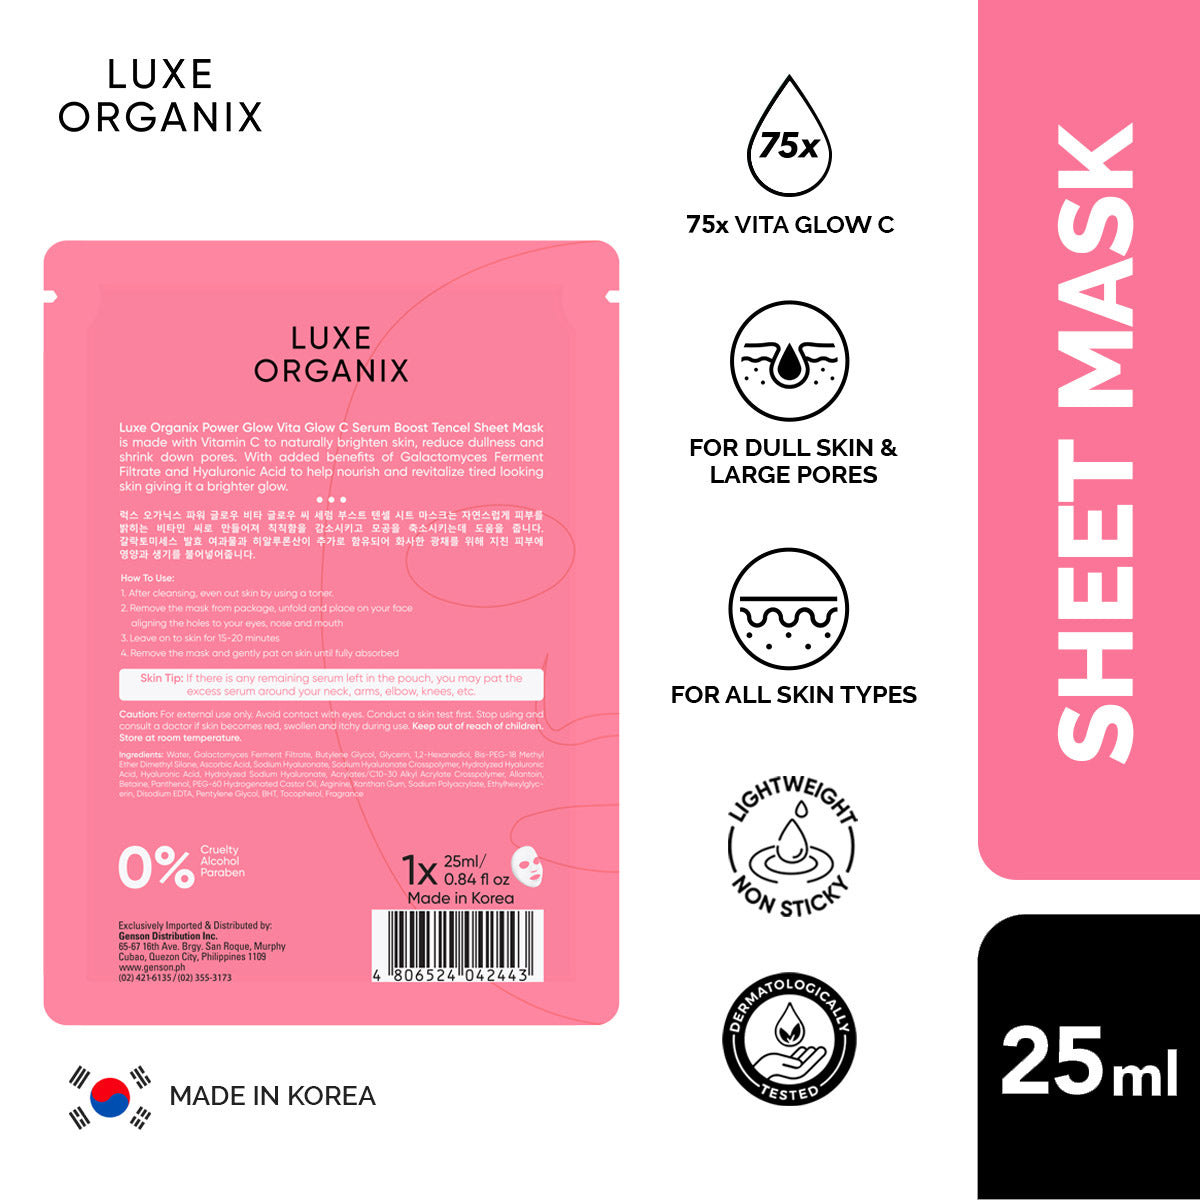 Serum Boost Tencel Sheet Mask 25ml (AR, PG, WR, CR, AL)